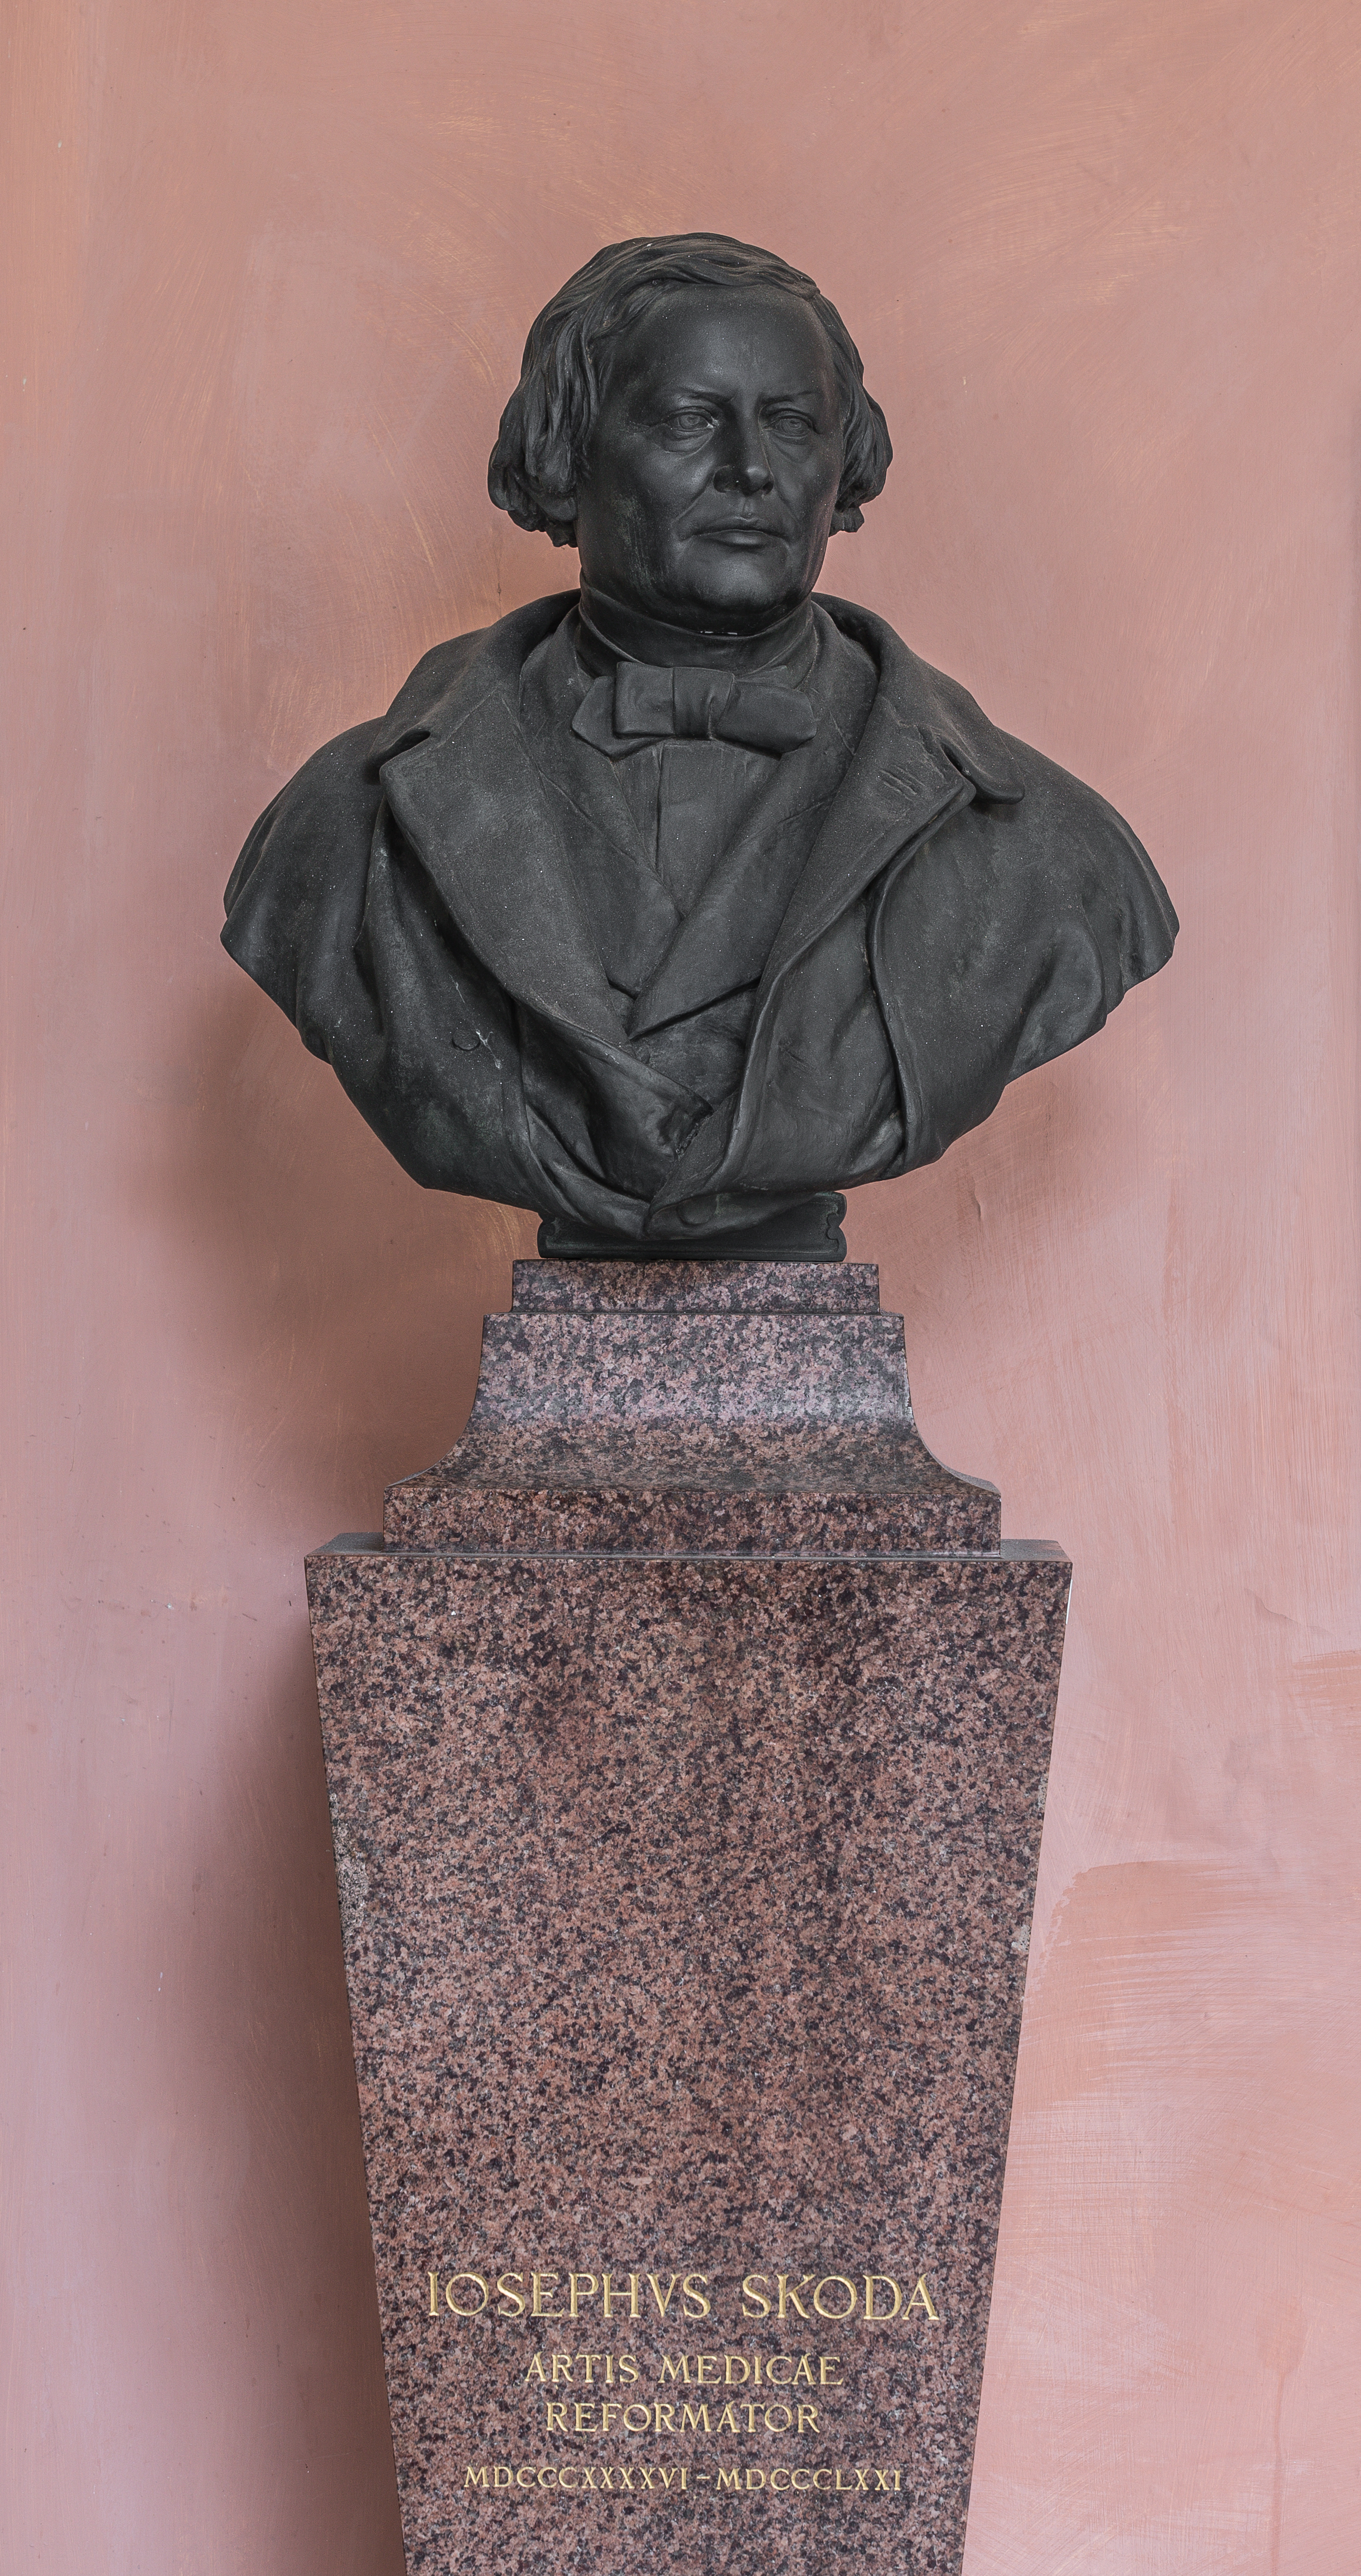 Josef von Skoda (1805-1881), Nr. 102 bust (bronce) in the Arkadenhof of the University of Vienna--34